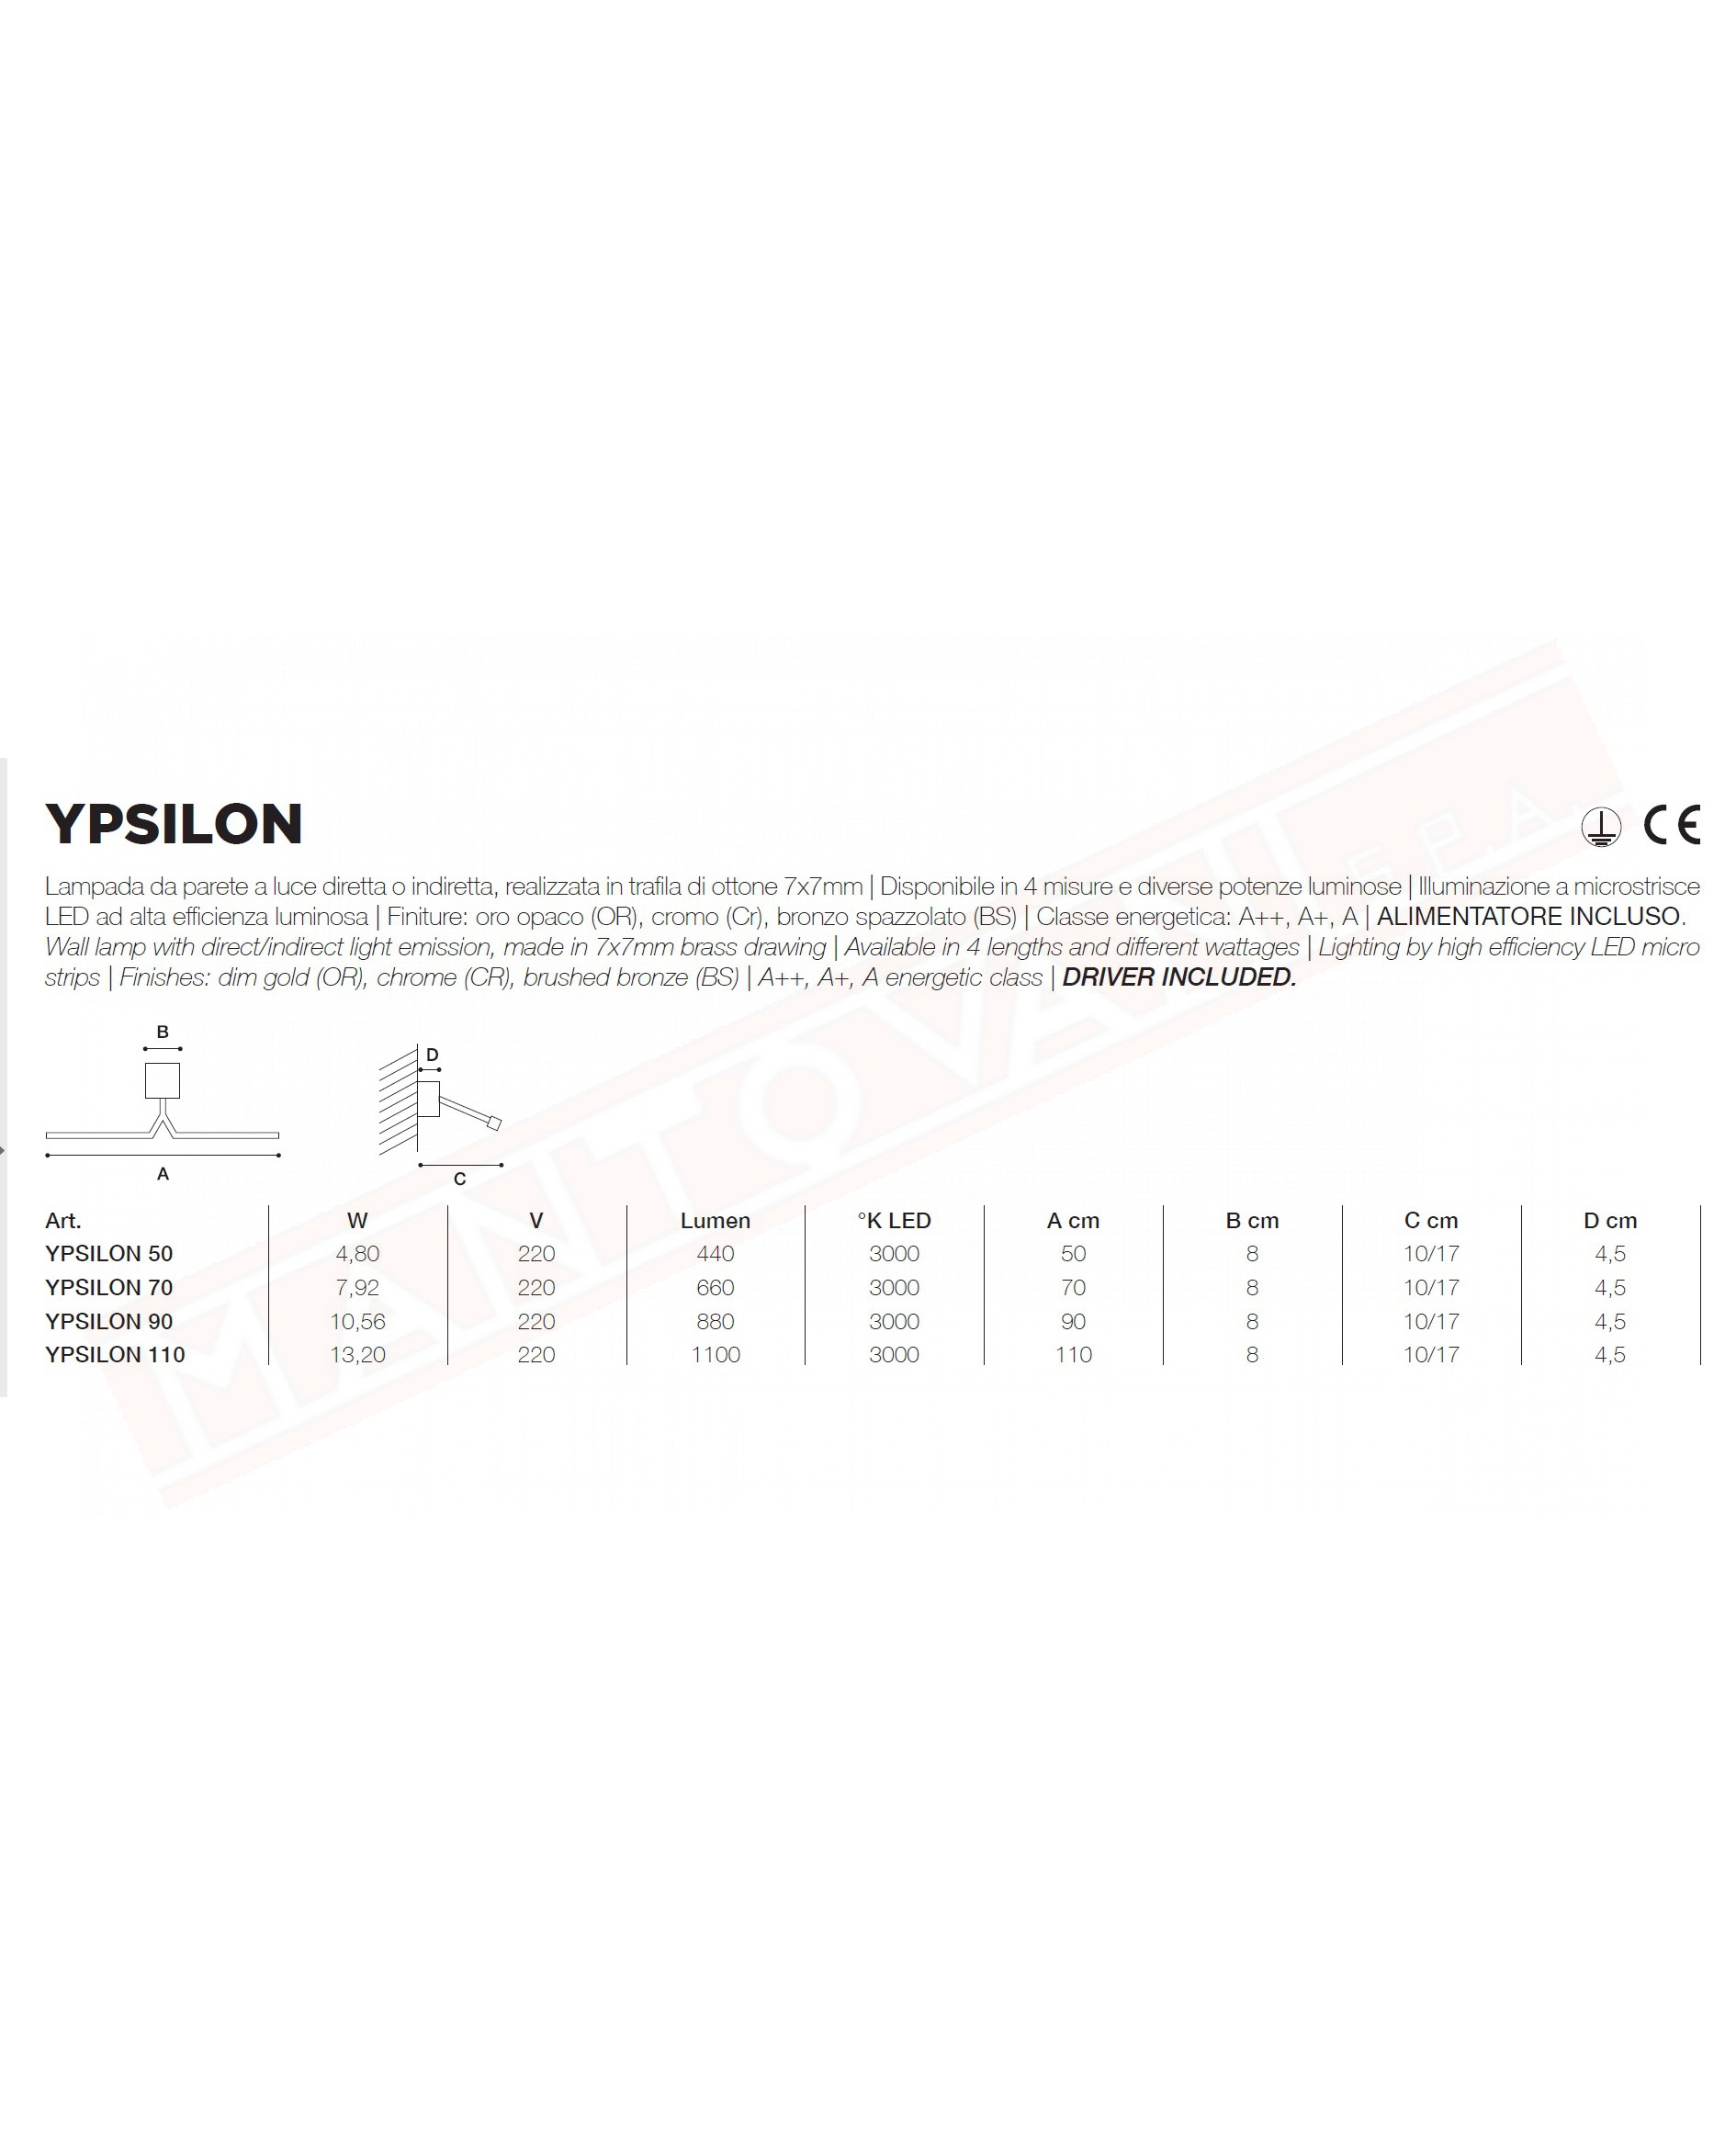 Icone Ypsilon lampada a parete a led 13.20 w 1100 lm 3000k cromata lunghezza cm 110 sporgenza 10\17